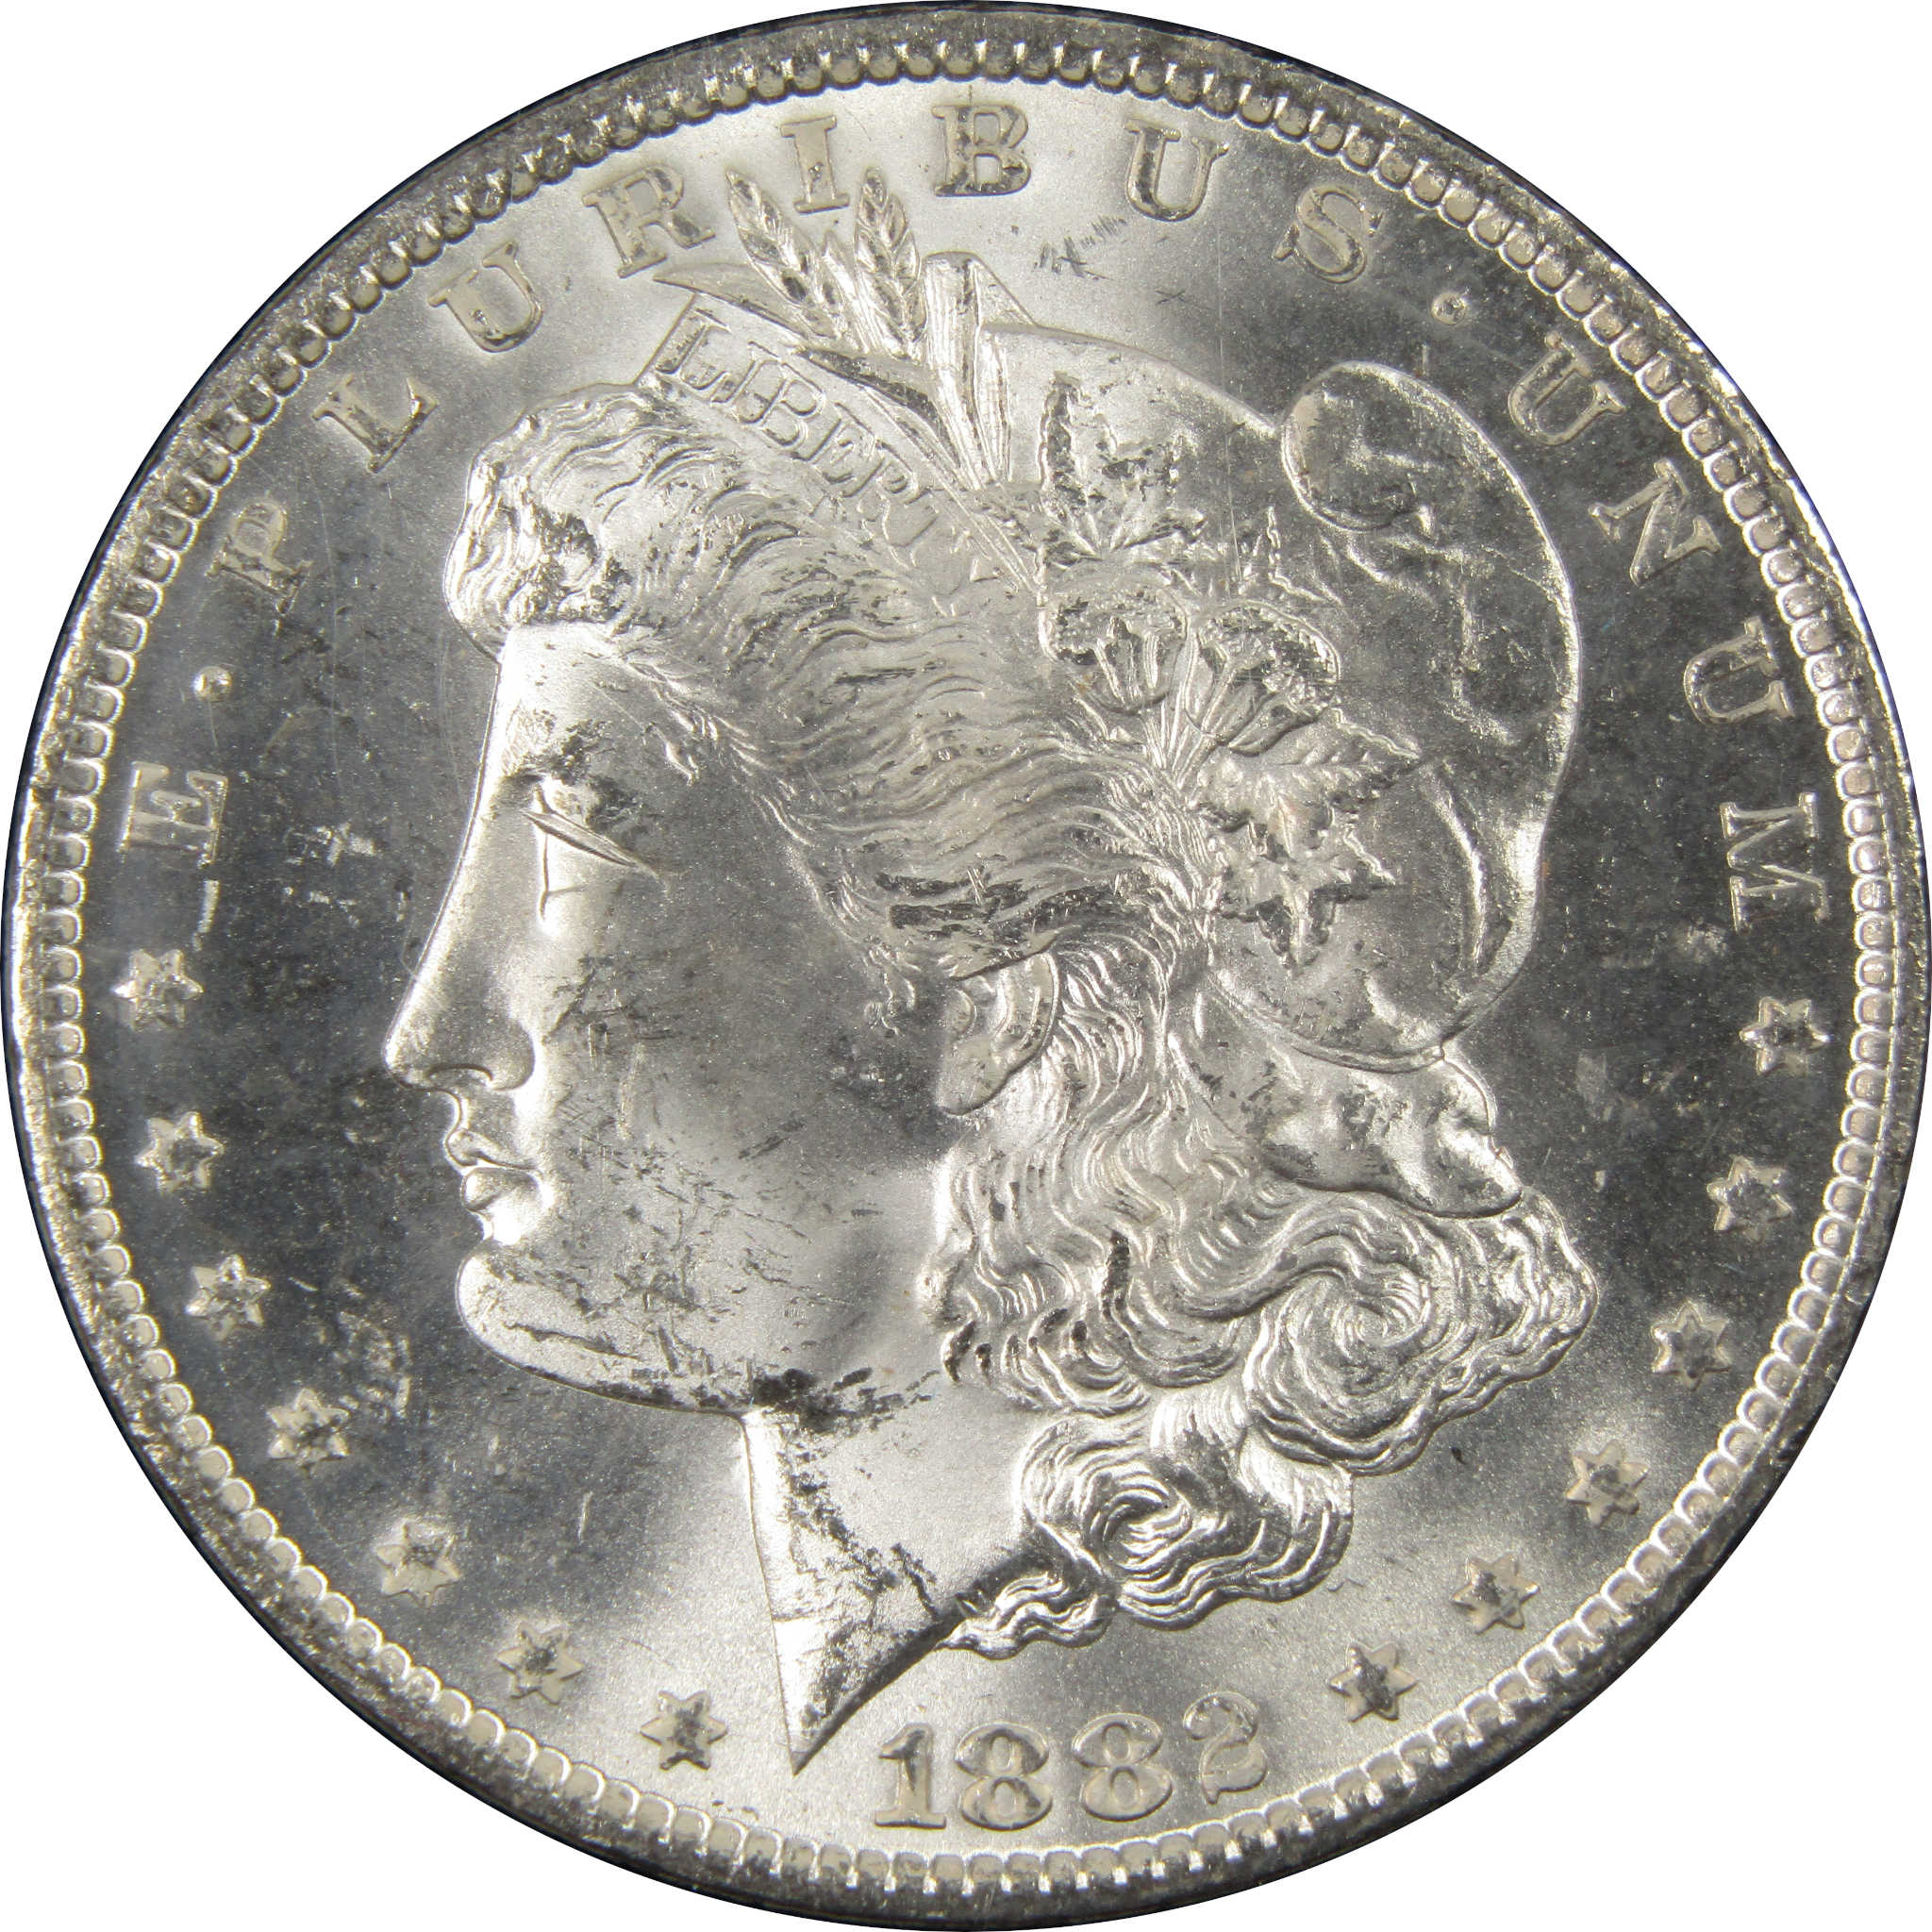 1882 CC GSA Morgan Dollar BU Uncirculated Silver $1 Coin SKU:I9862 - Morgan coin - Morgan silver dollar - Morgan silver dollar for sale - Profile Coins &amp; Collectibles